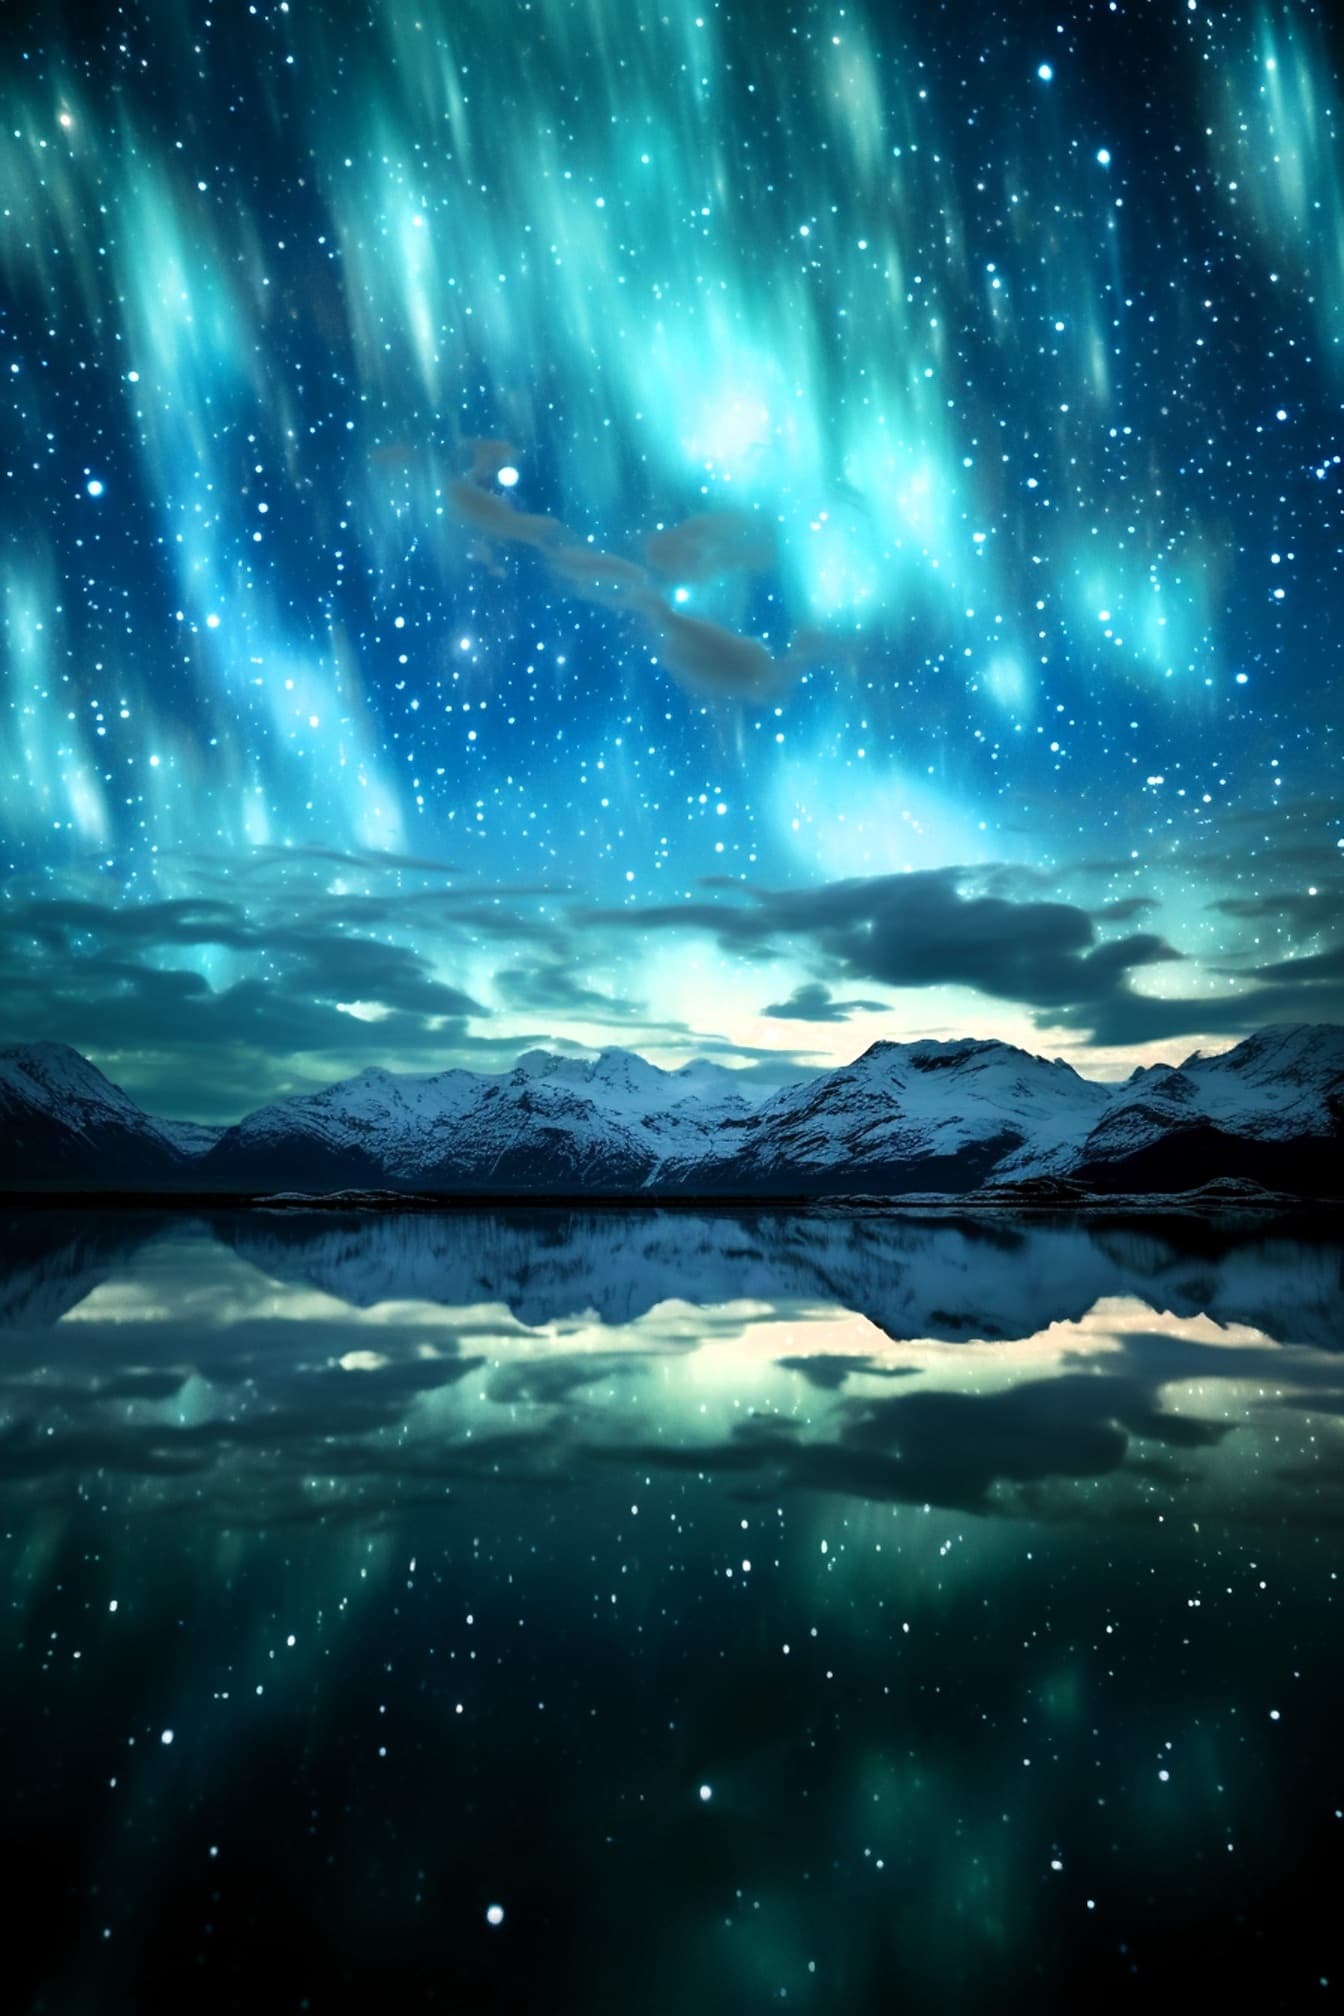 Aurora boreală pe cerul nopții arctice cu stele și glaceir ilustrație pe malul lacului